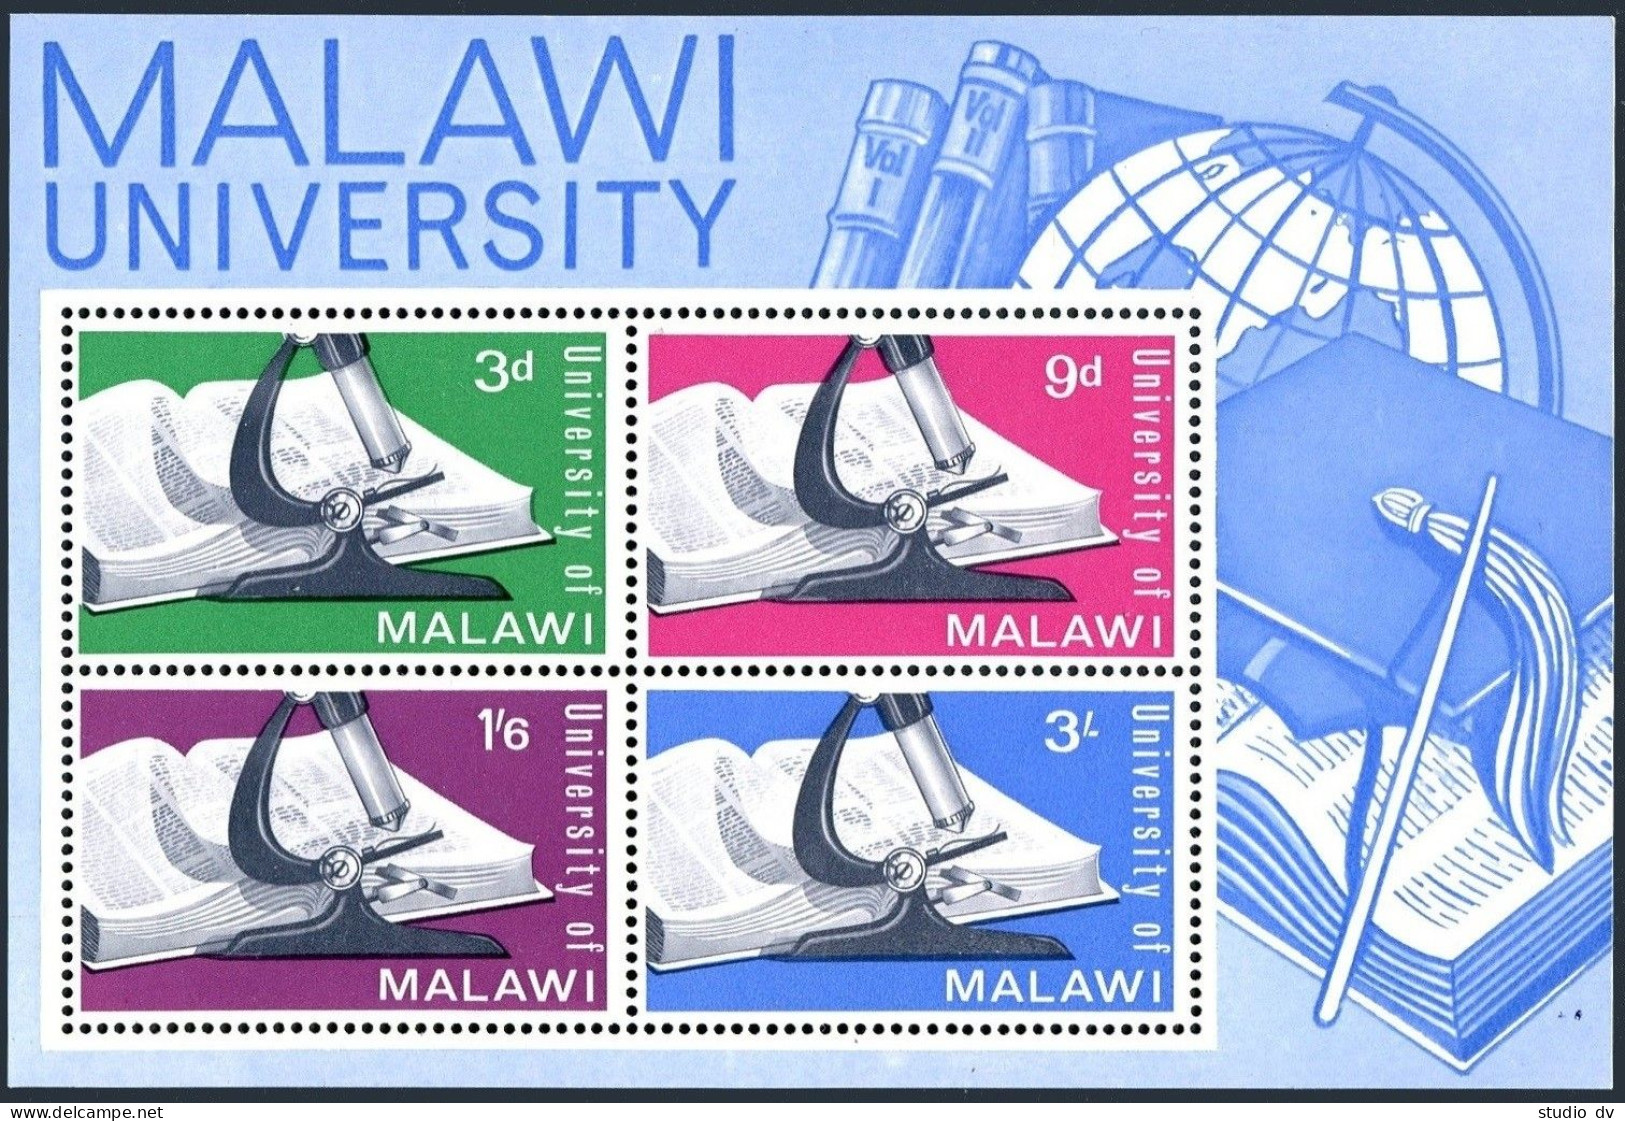 Malawi 36a Sheet,MNH.Michel Bl.4. University Of Malawi,1965.Globe,Microscope. - Malawi (1964-...)